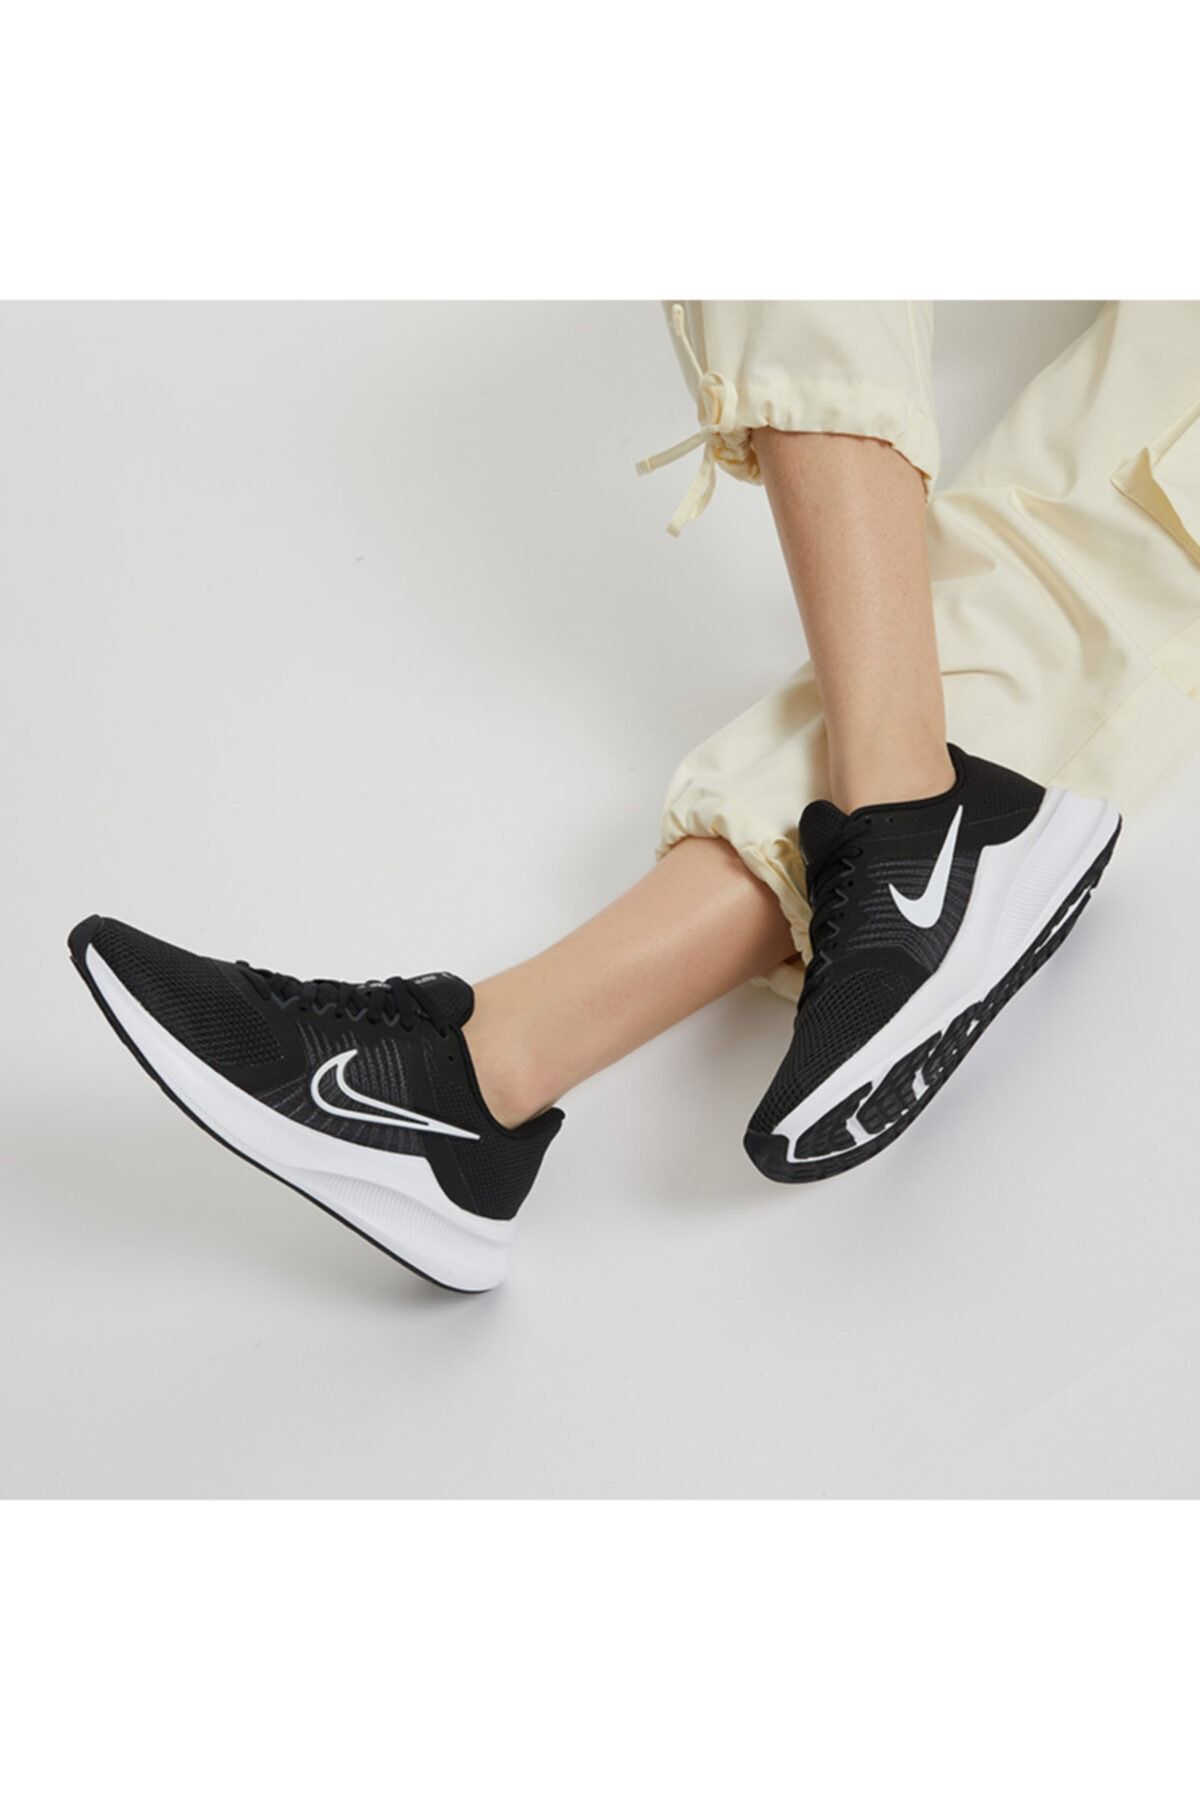 Nike Downshifter 11 Kadın Siyah Spor Ayakkabı Cw3413-006